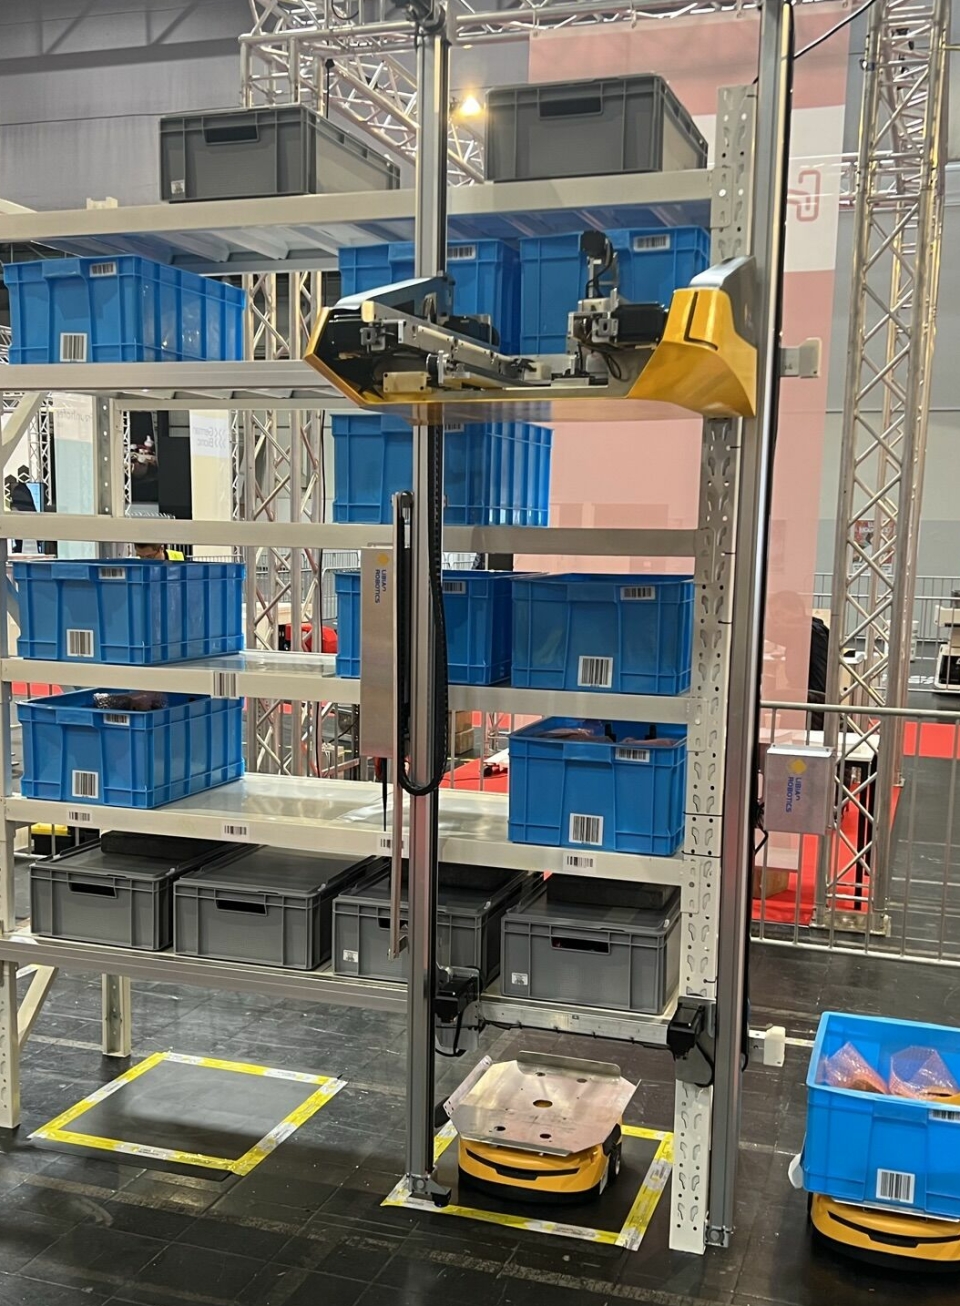 Robotene til Airrob henter kasser i hyller opptil 14 meter høye, og kan servere dem til små AMR-er som frakter dem videre.